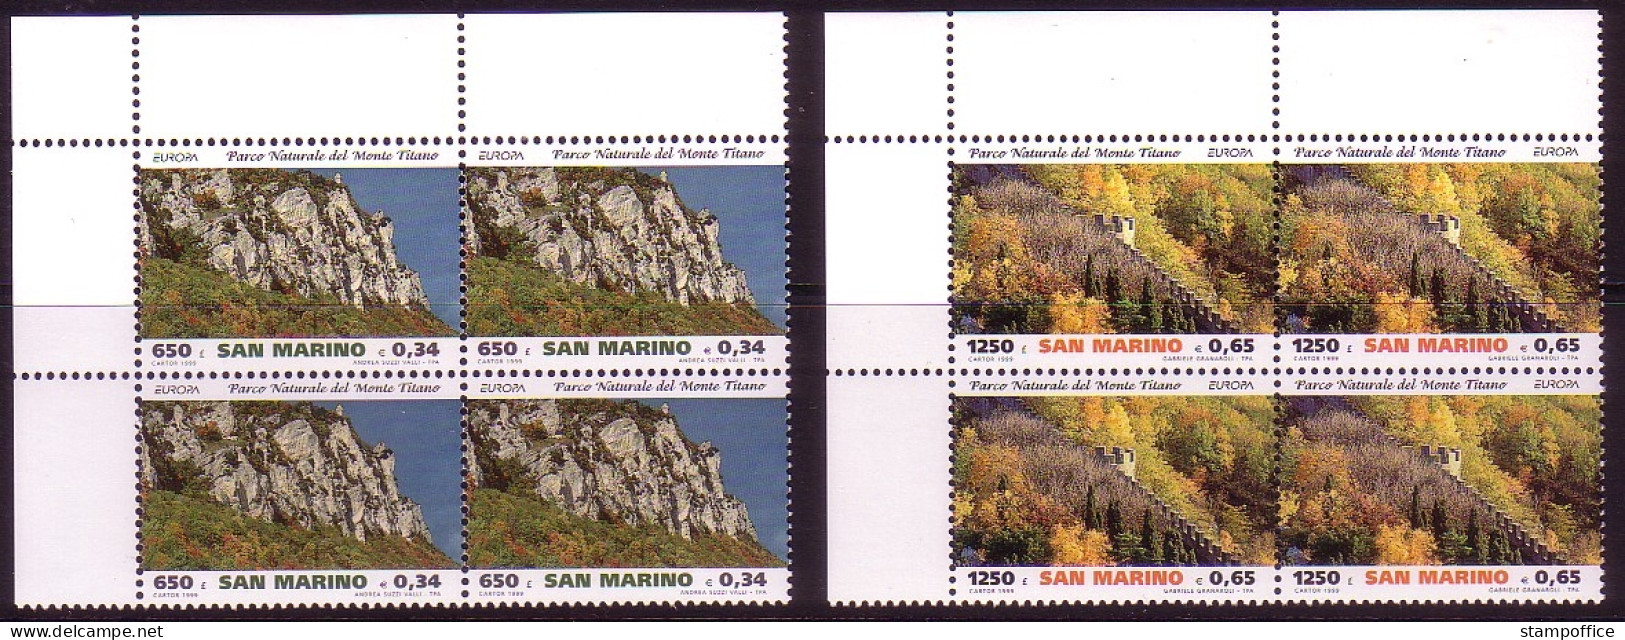 SAN MARINO MI-NR. 1832-1833 POSTFRISCH(MINT) 4er BLOCK EUROPA 1999 - NATUR- Und NATIONALPARKS - 1999